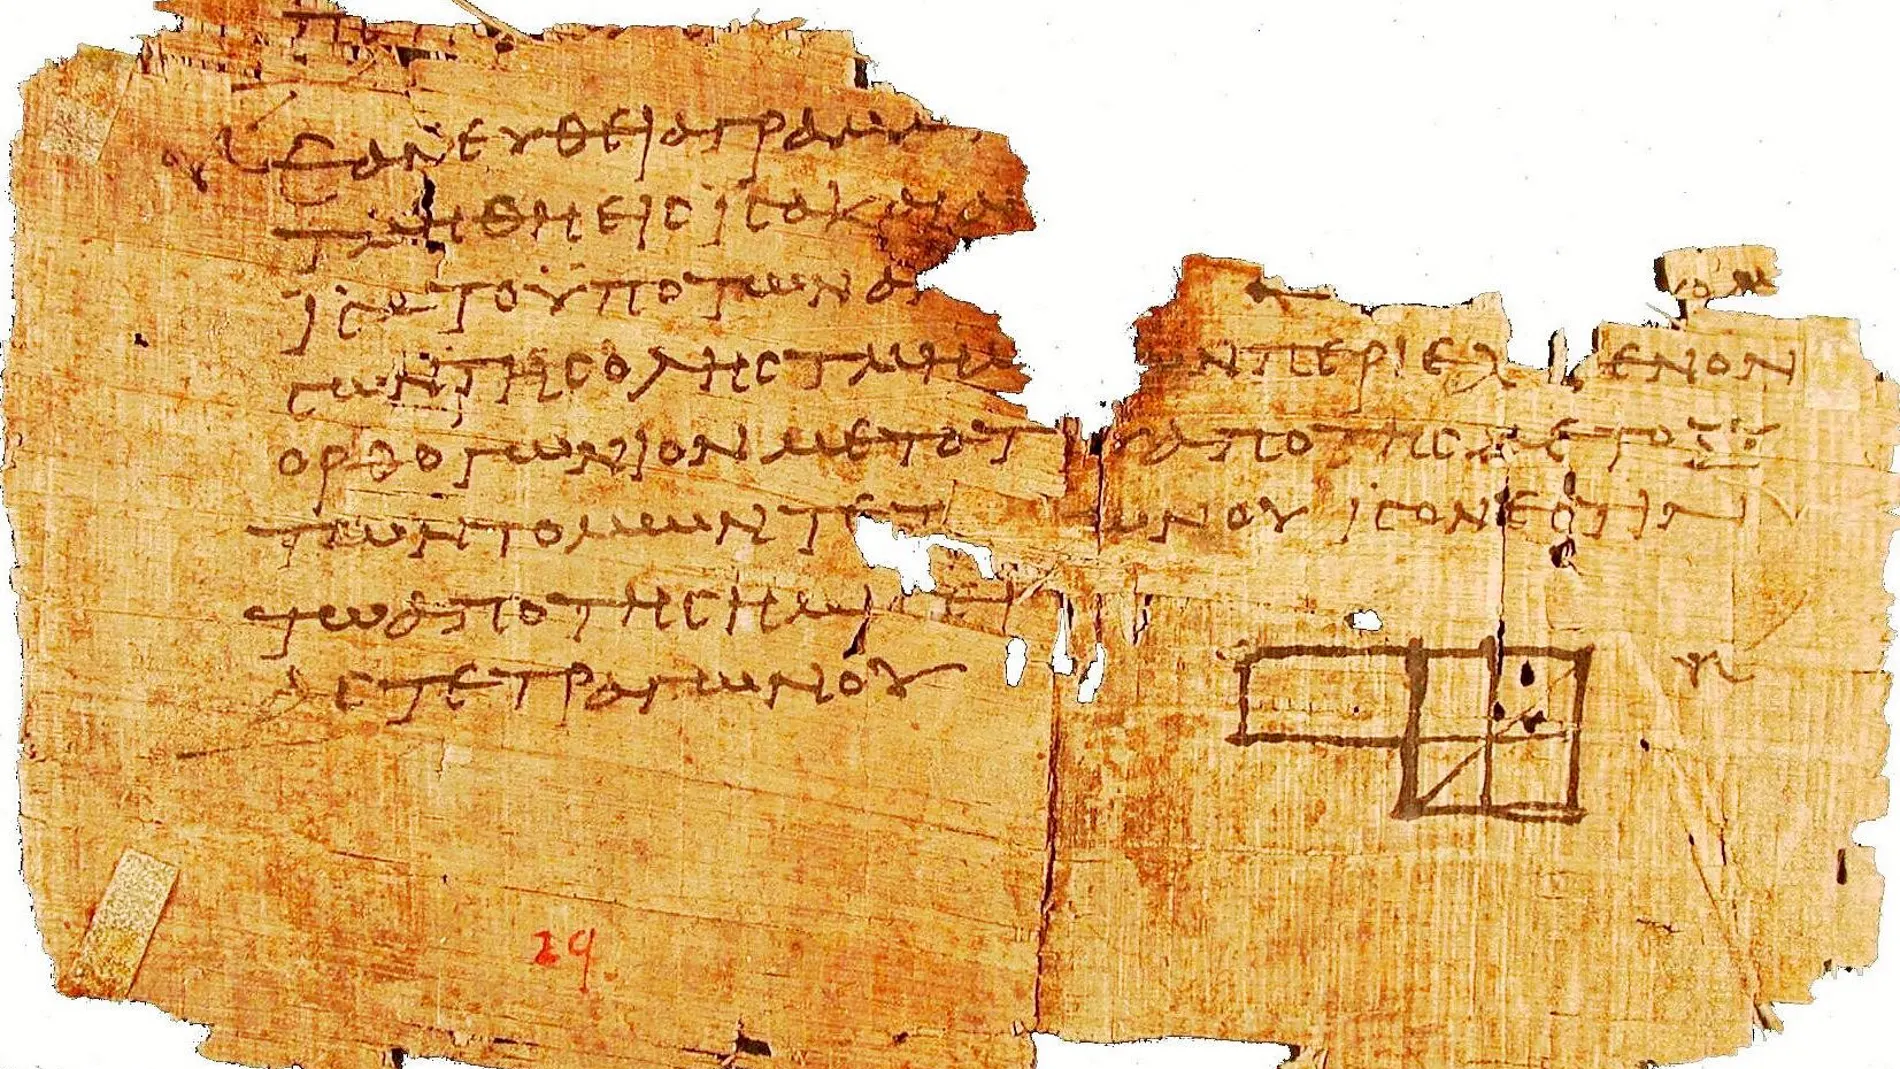 Un fragmento de los Papiros de Oxirrinco, datados entre los siglos I y VI, hallados en Egipto y custodiados en Oxford